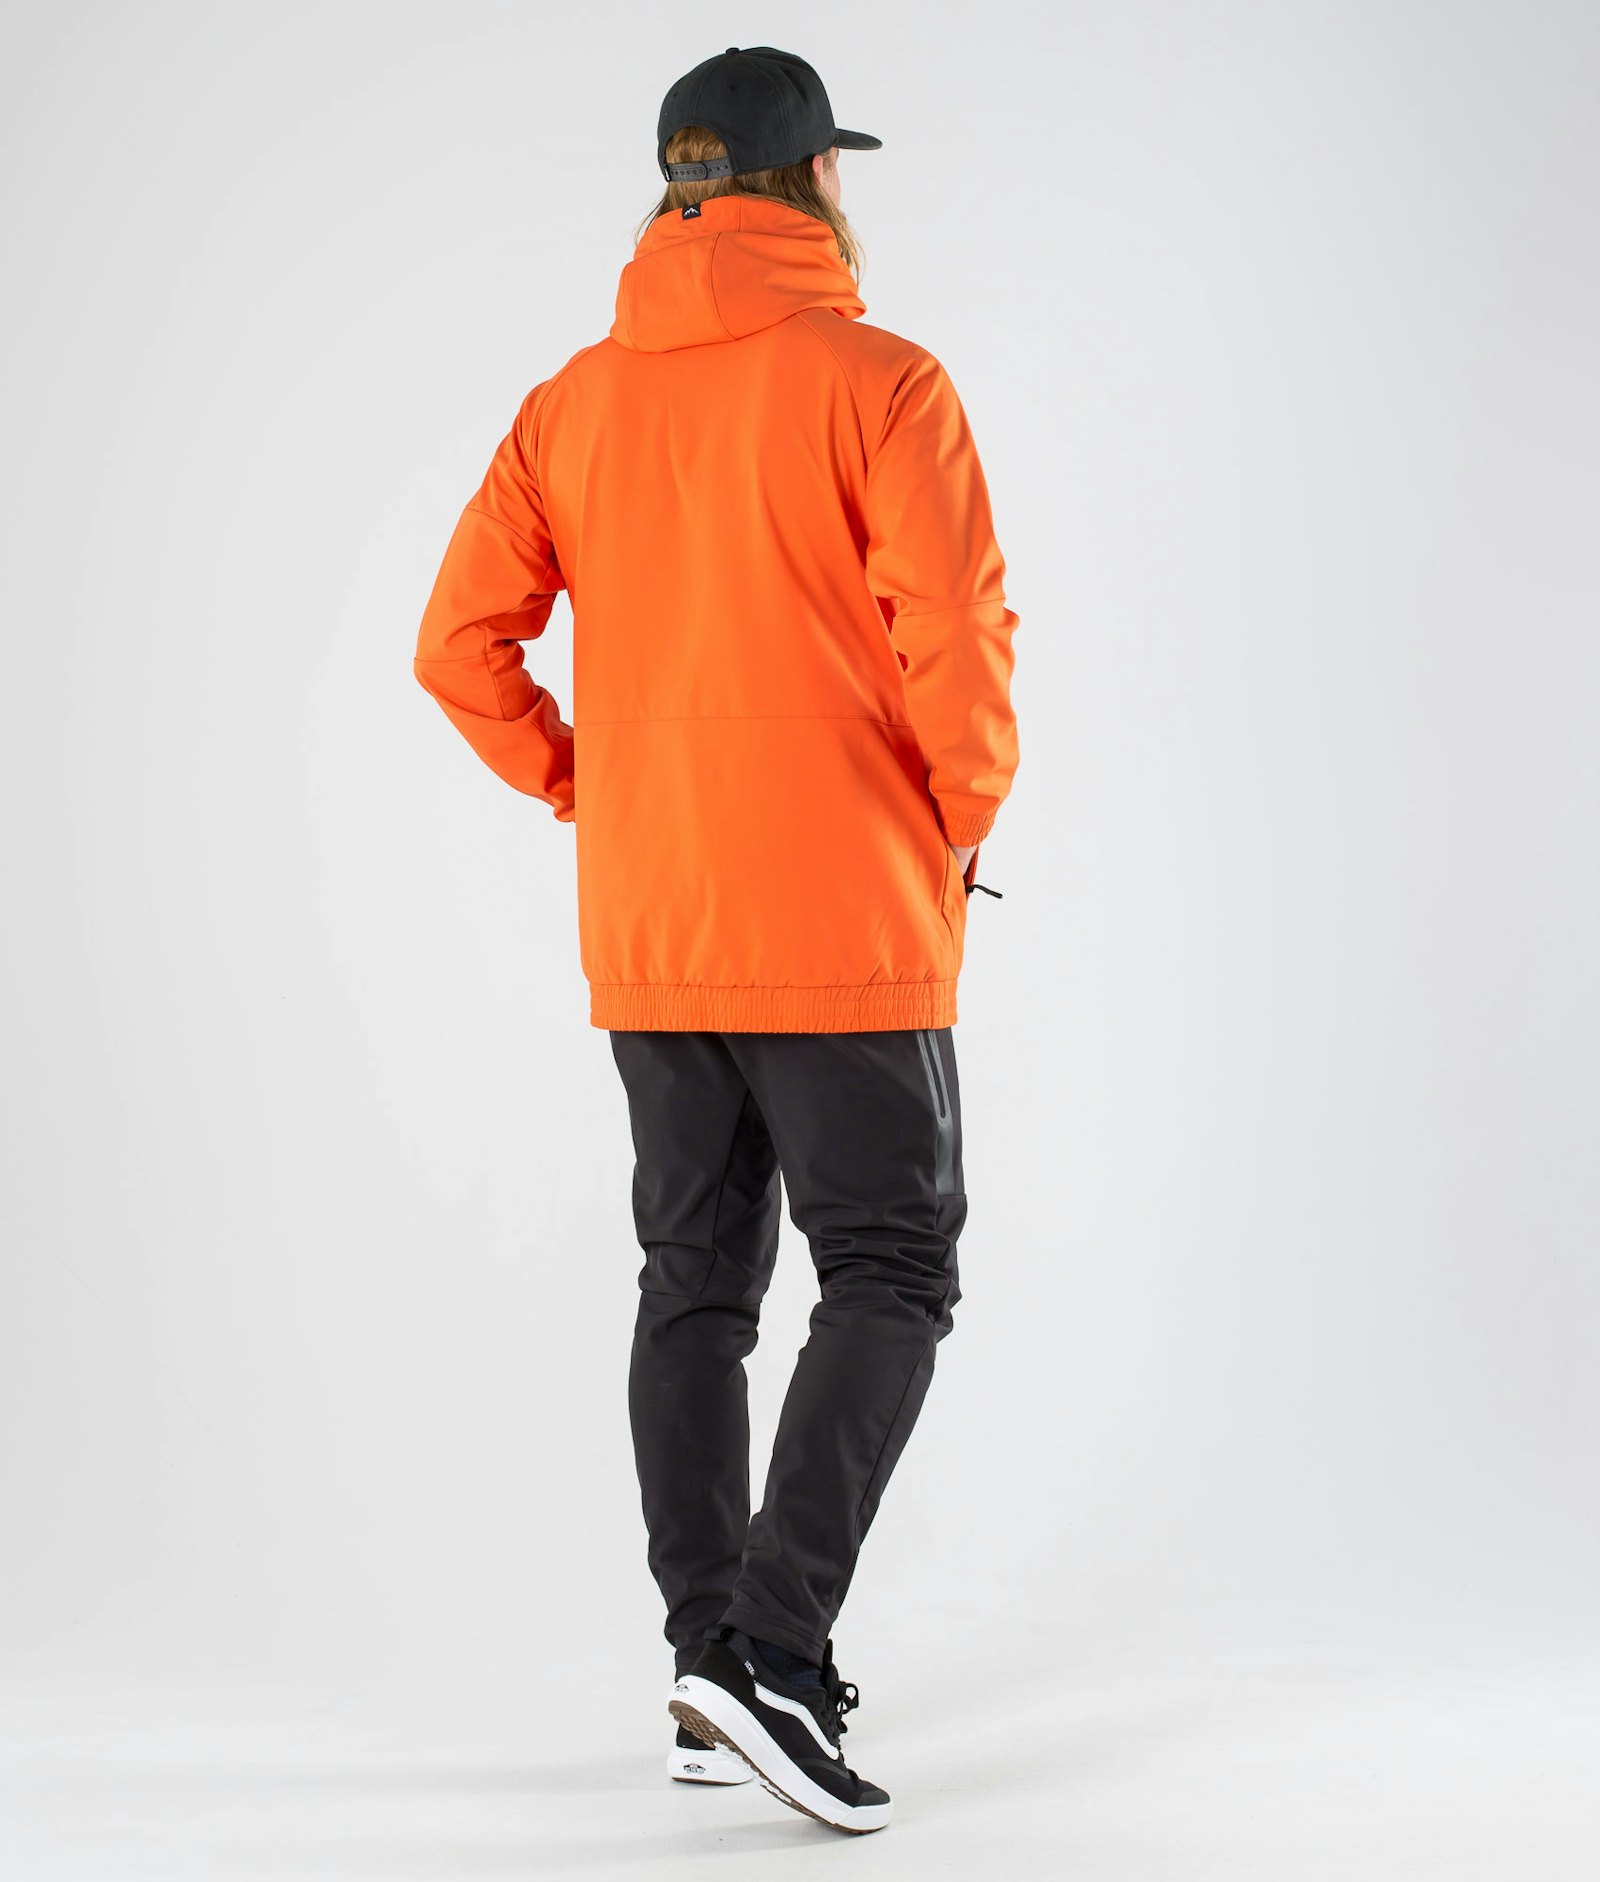 Rambler Outdoor Jacket Men Orange